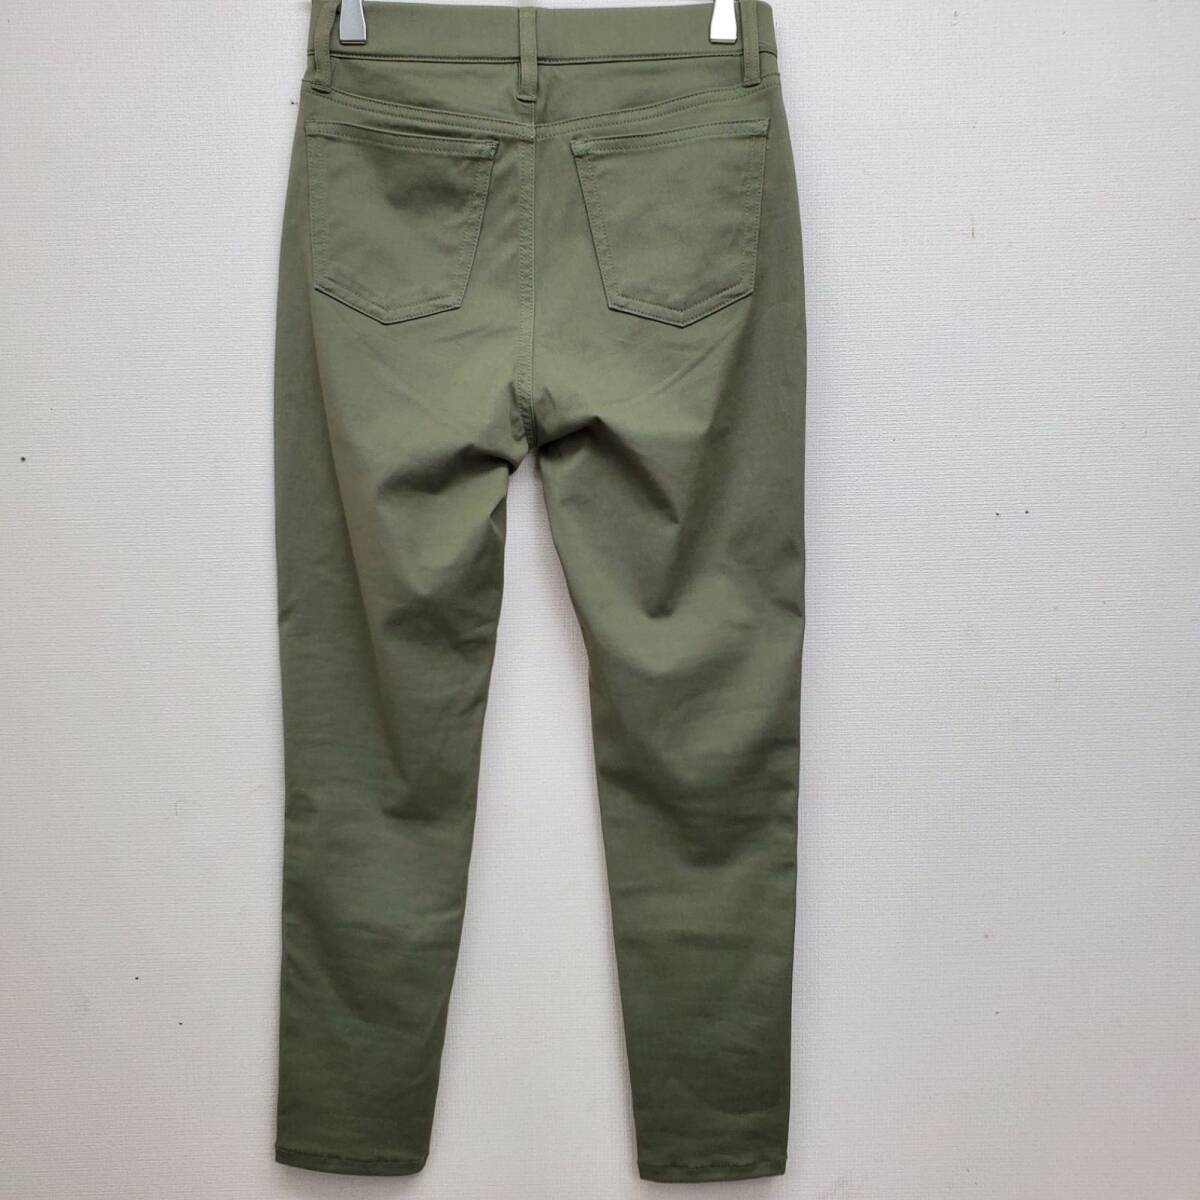 [ новый товар ] Muji Ryohin укороченные брюки леггинсы брюки длинные брюки охлаждающий стрейч хаки зеленый сделано в Японии женский S размер [CB25]